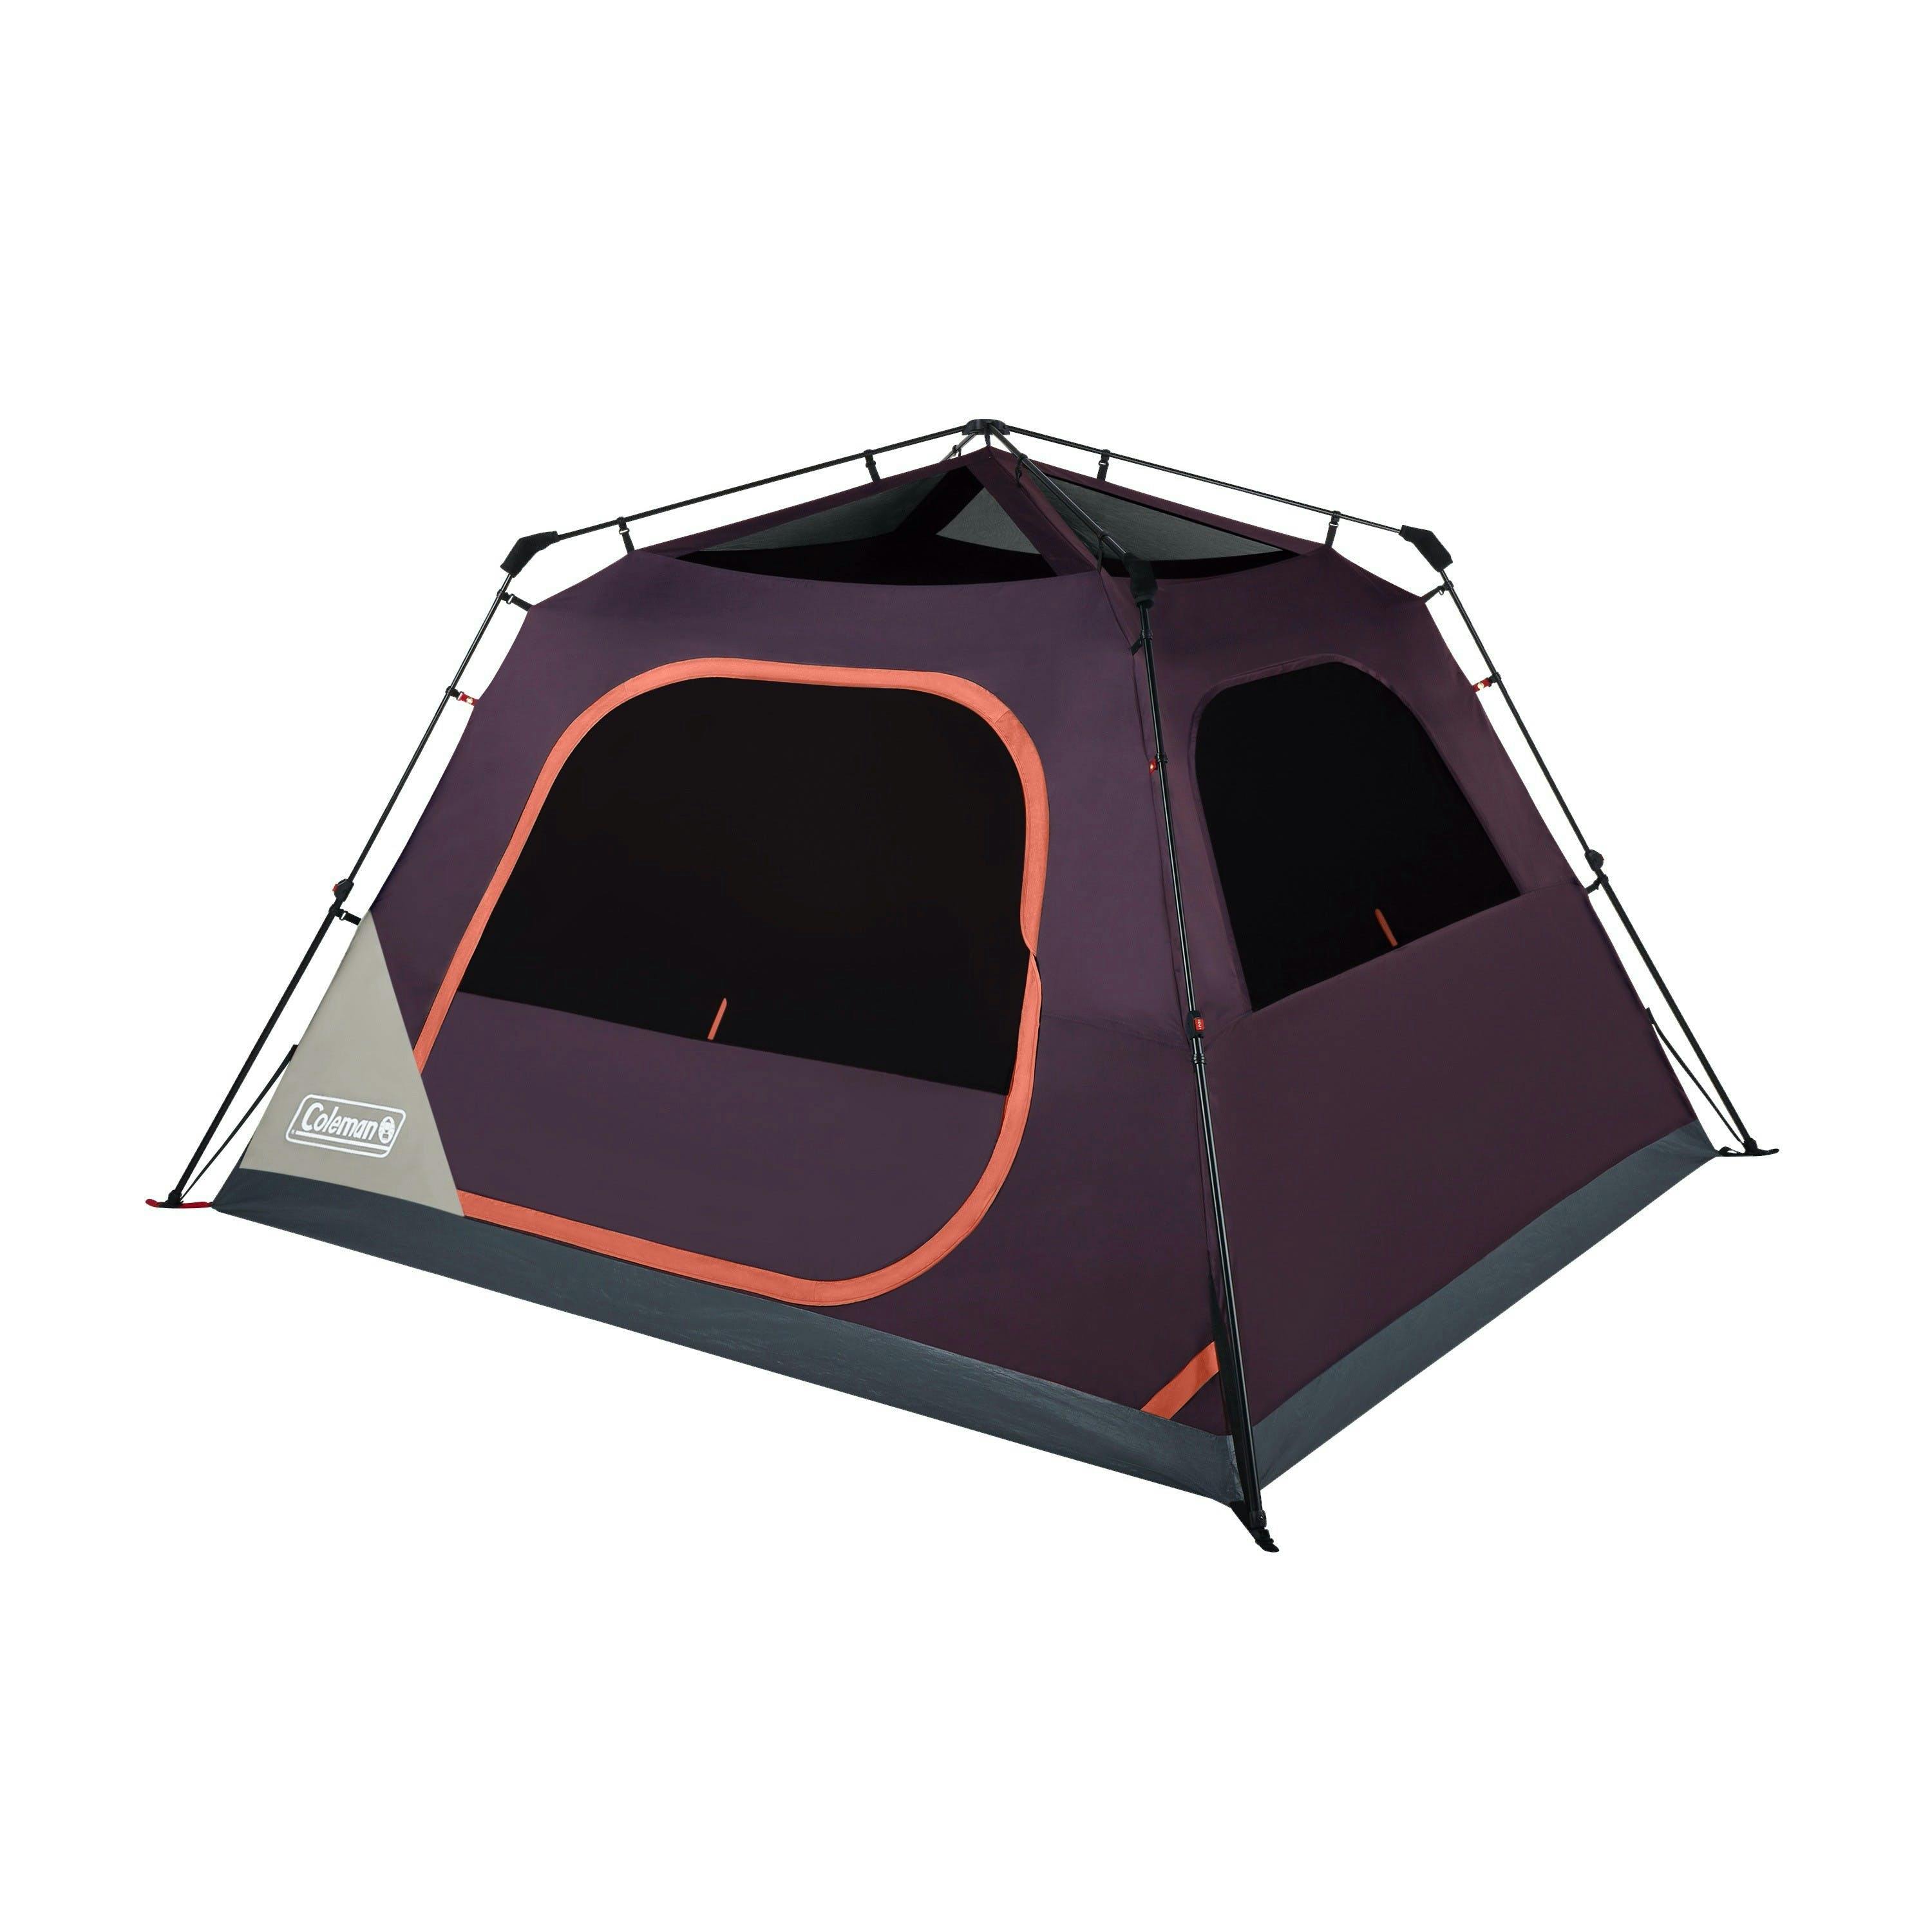 Verwarren zakdoek Kustlijn Coleman Skylodge Instant Camping Tent · 8 Person · Blackberry | Curated.com